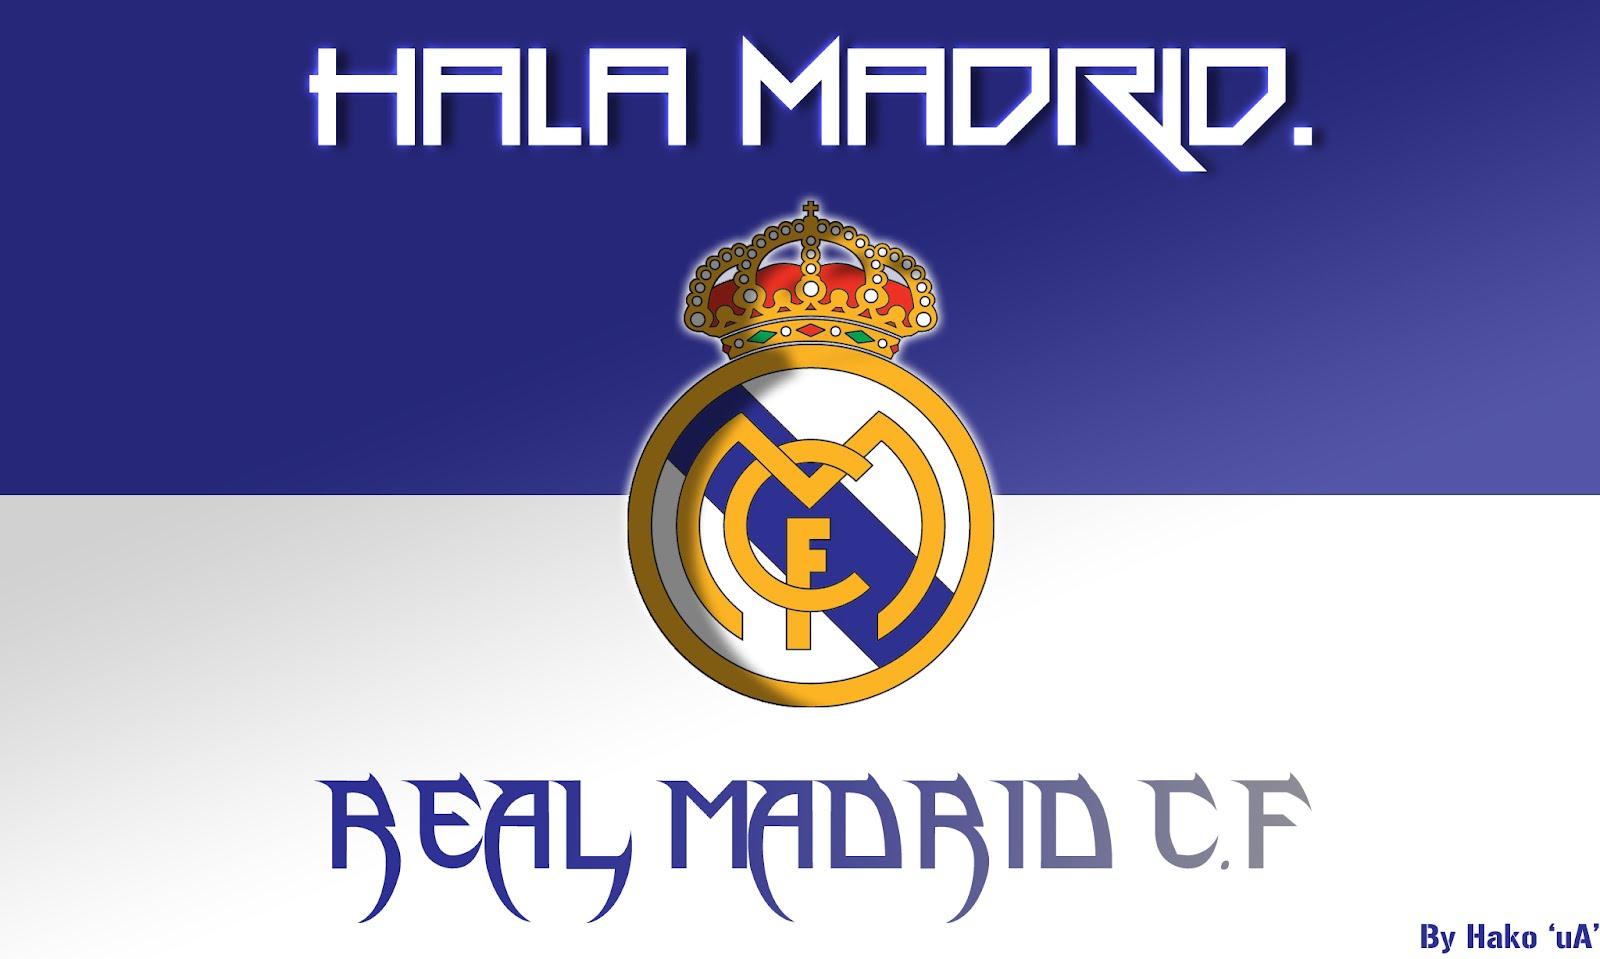 HD wallpaper: 1920x1080 px, HalaMadrid, Real Madrid | Wallpaper Flare